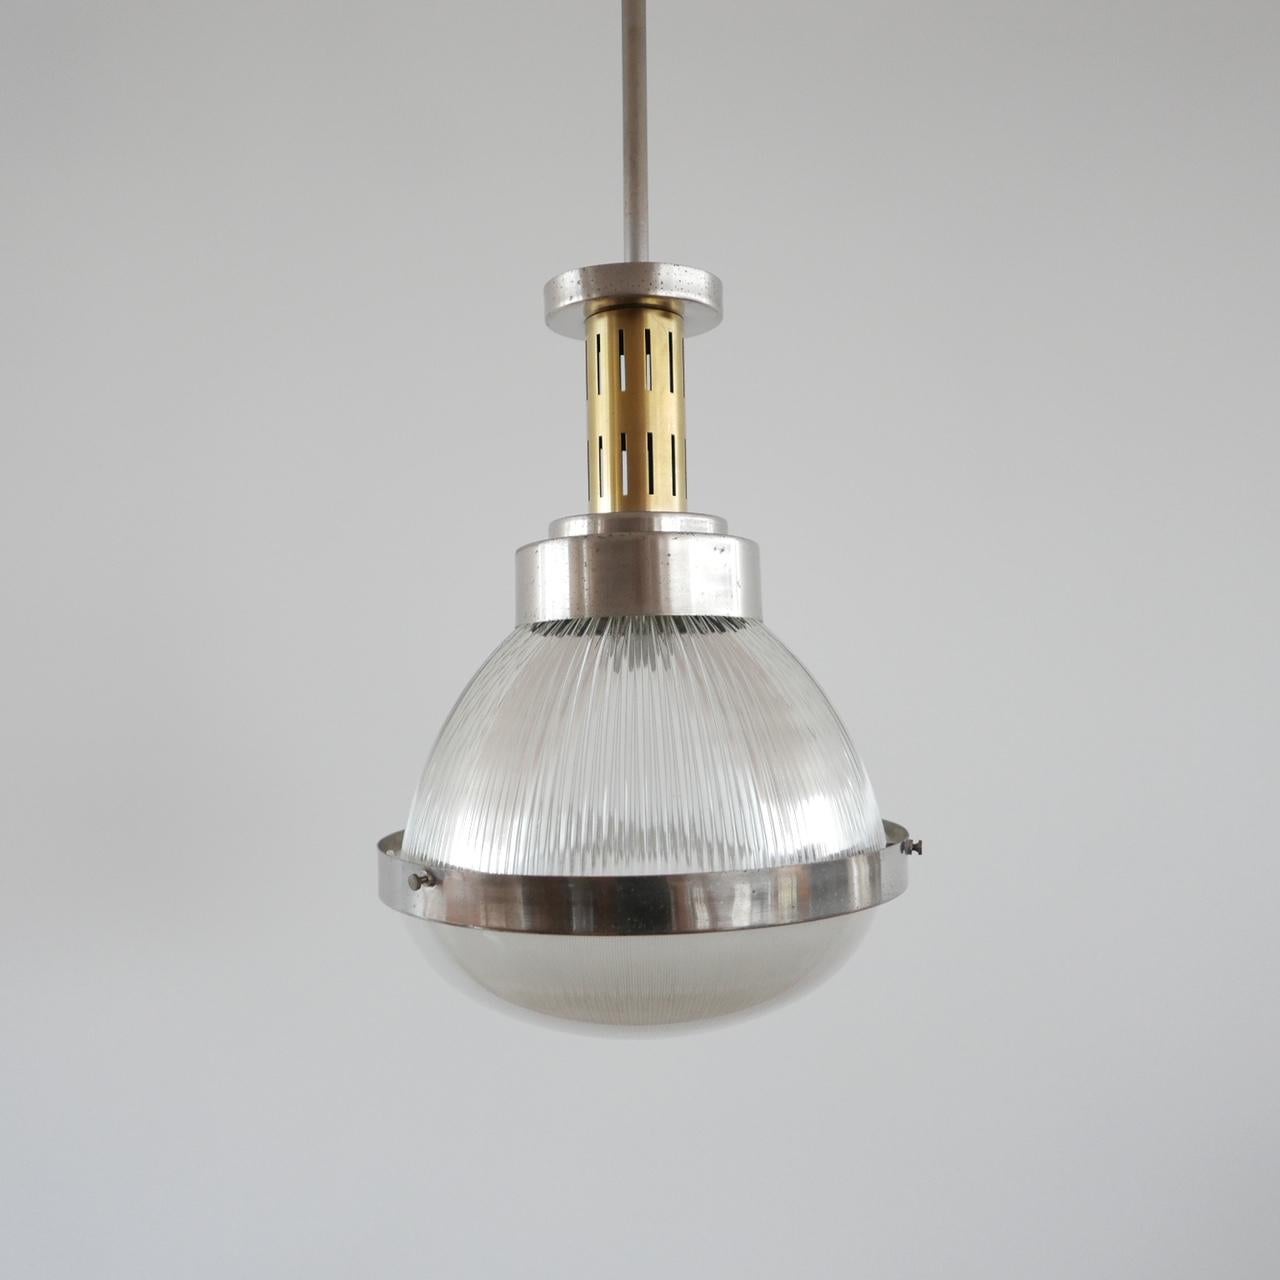 Italian Pendant Light Attributed to Ignazio Gardella For Sale 2